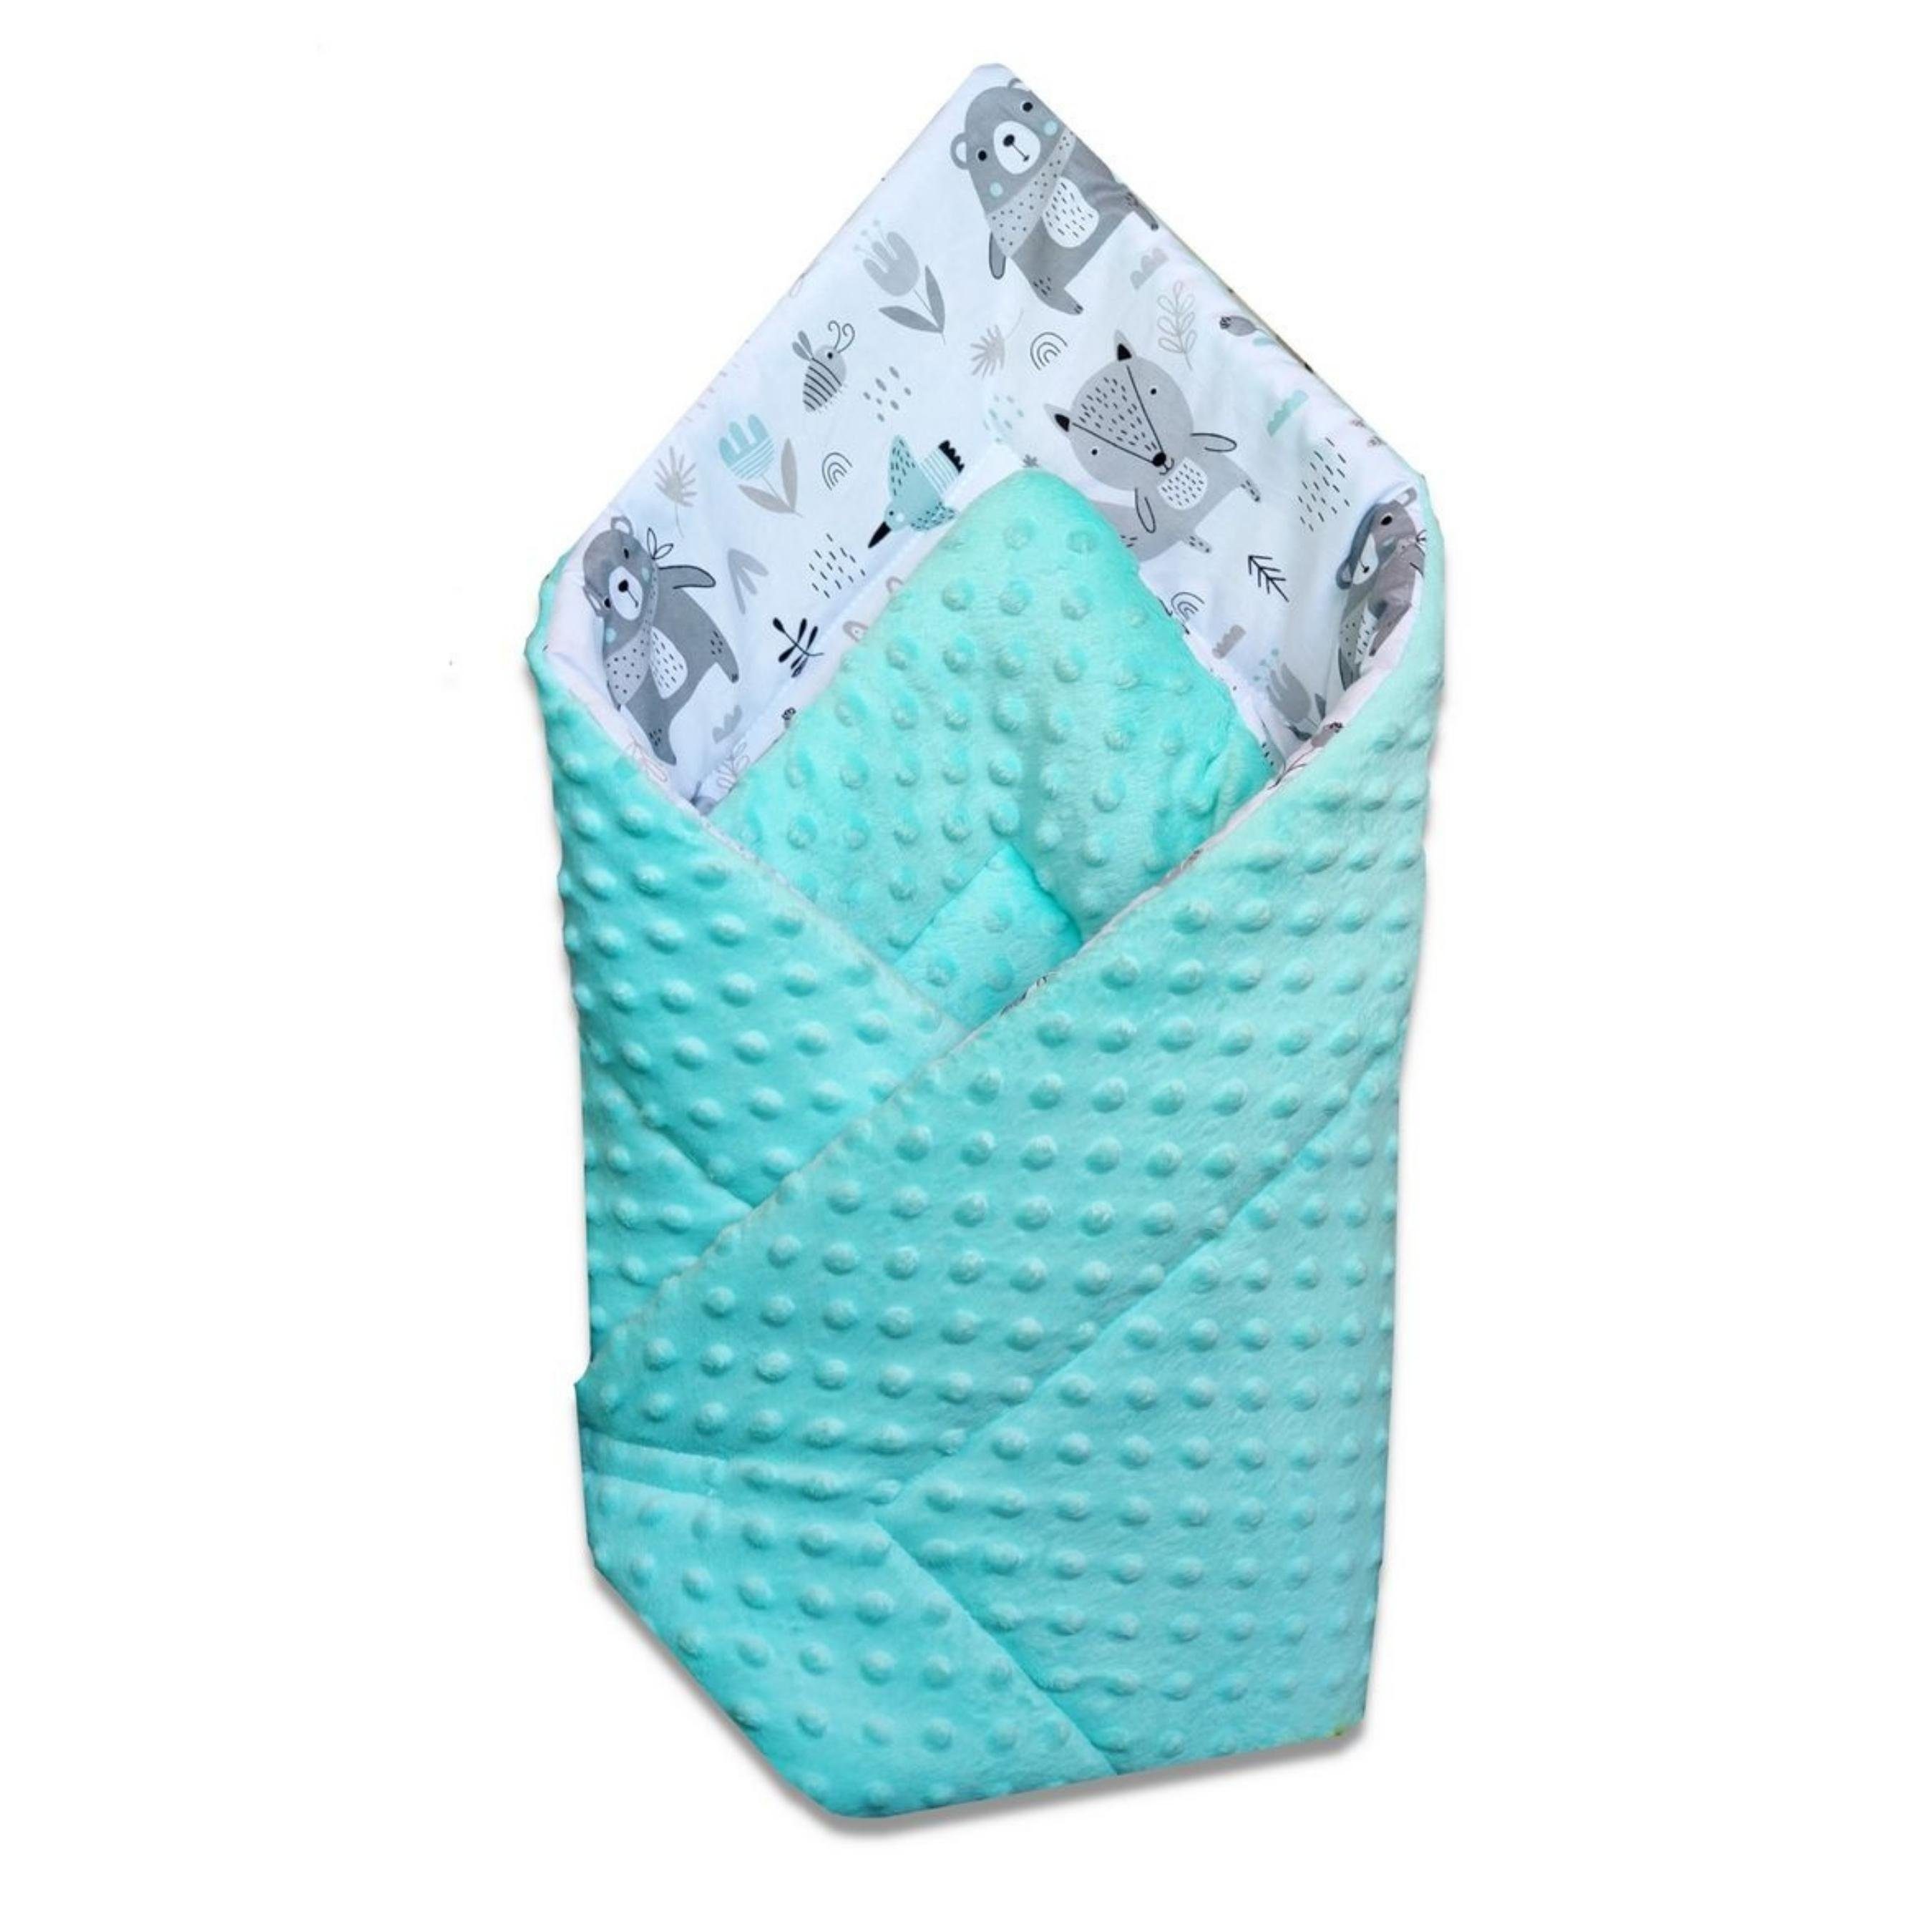 Babymajawelt Pucksack Puckdecke Minky Einschlagdecke Neugeborene Babydecke Schlafsackersatz, Decke zum Einschlafen, Zudecken, Kuscheln. Made in EU, Größe 75x75 cm Mint 743